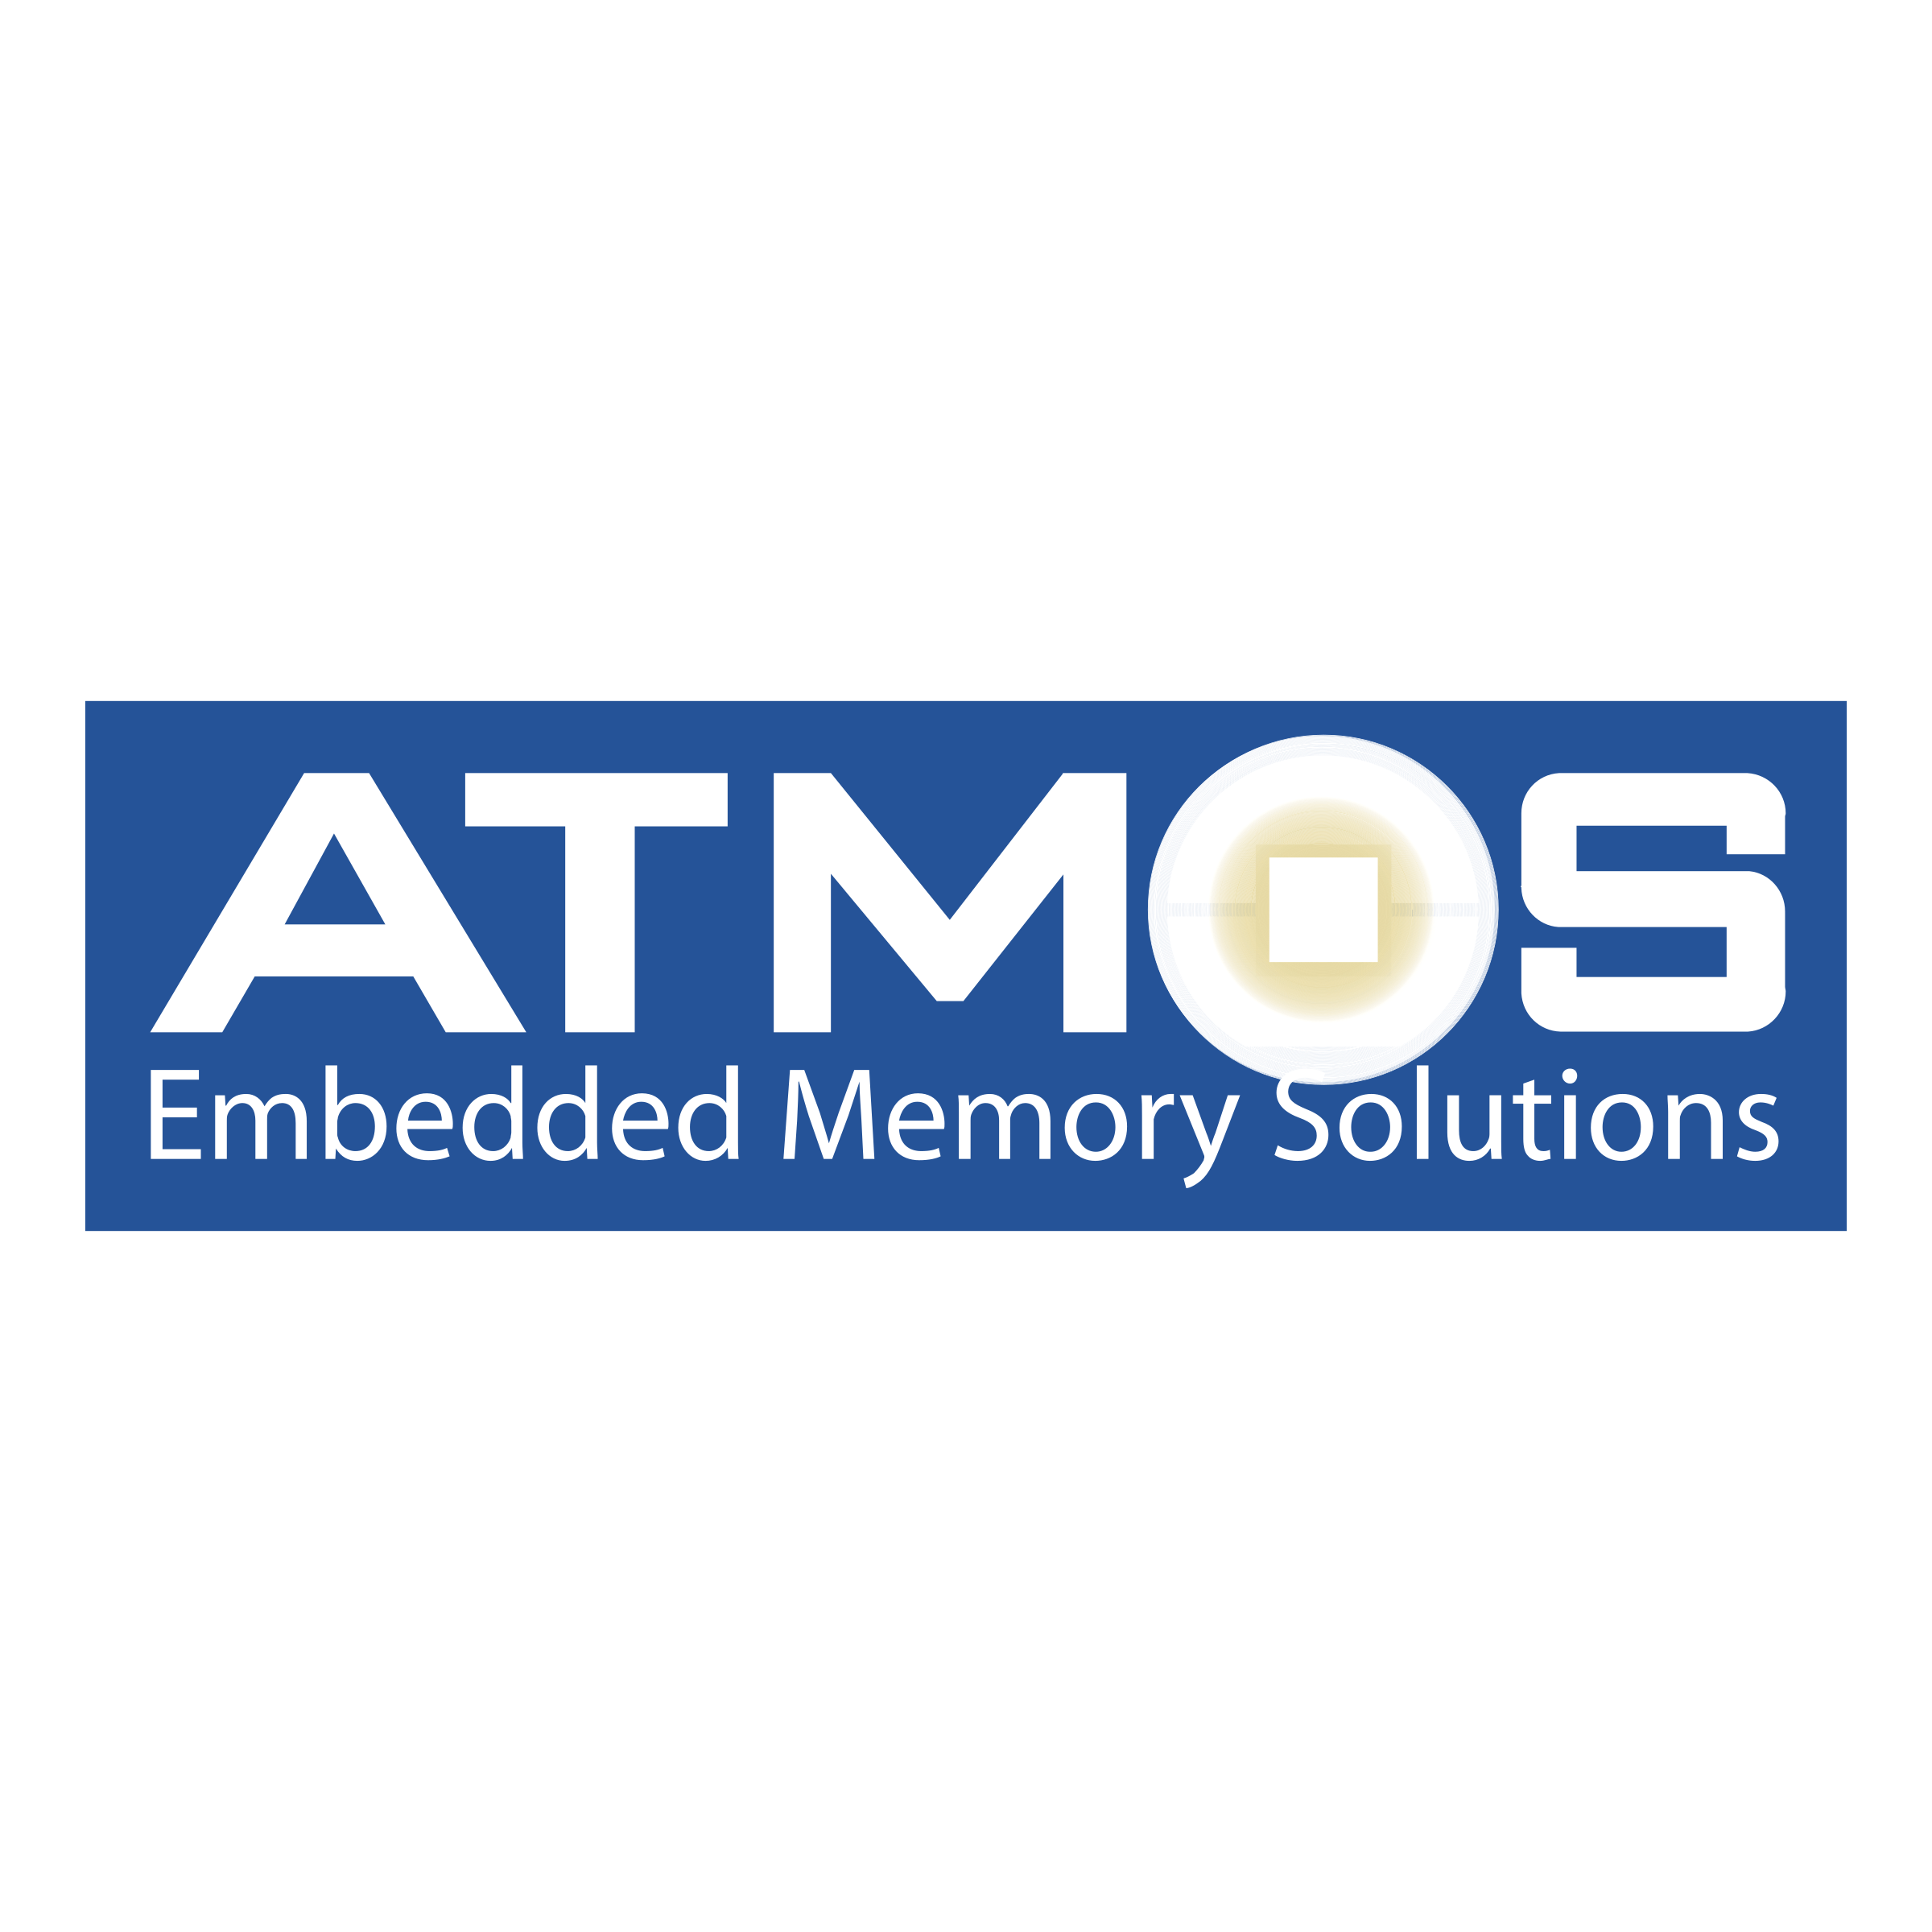 Atmos Logo - Atmos Logo PNG Transparent & SVG Vector